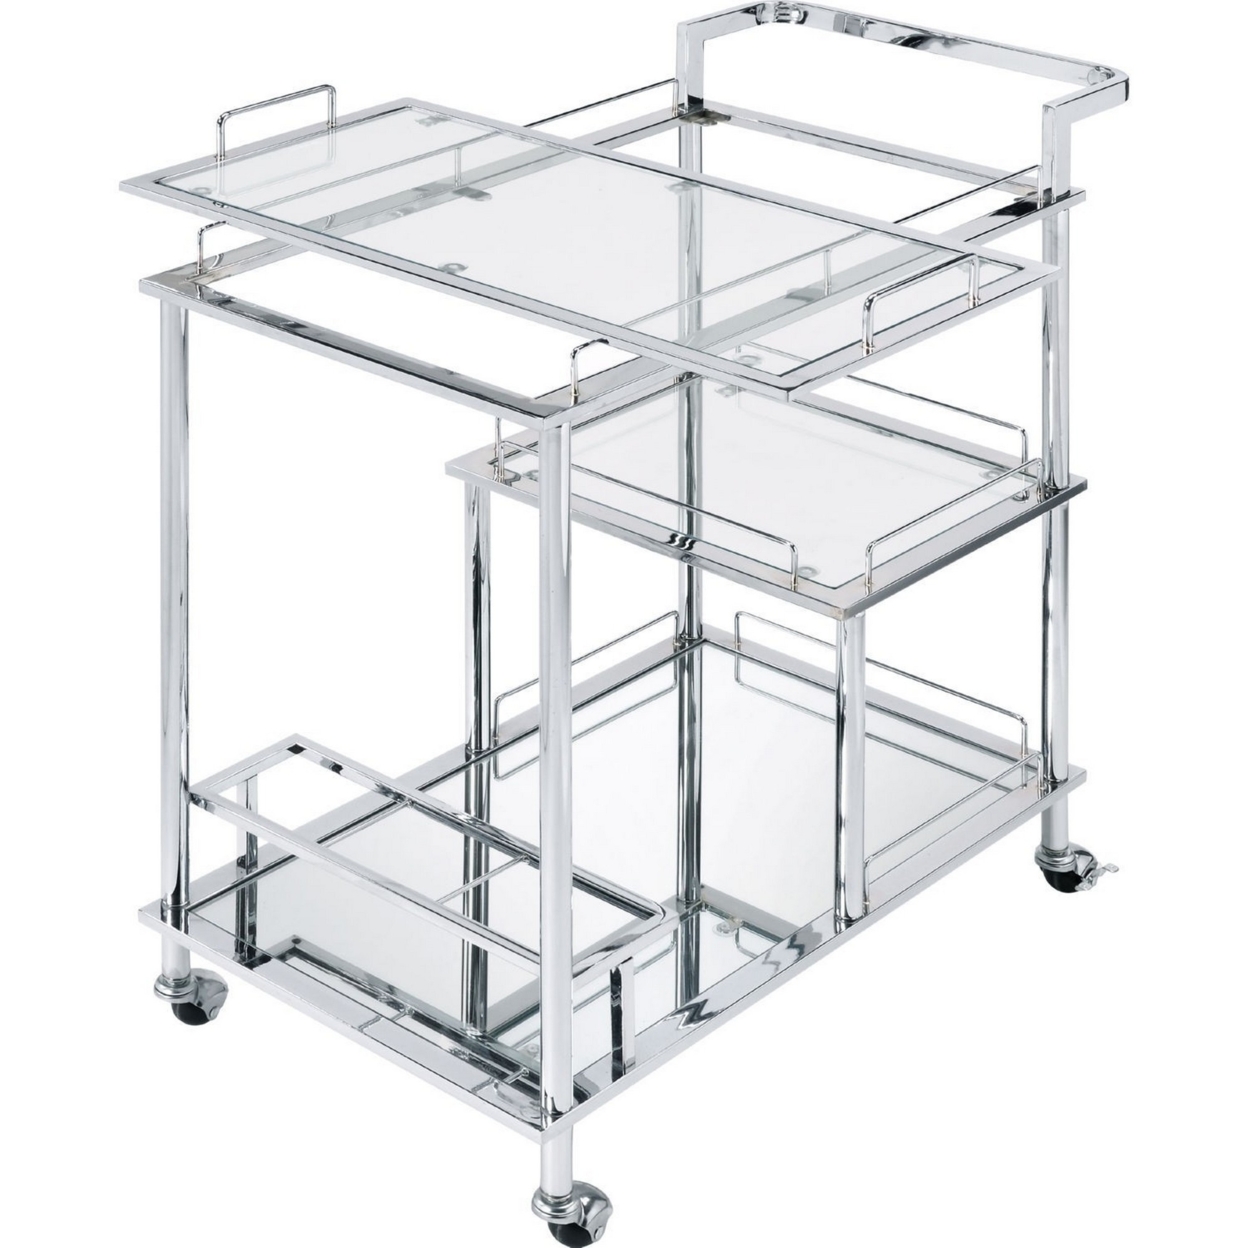 3 Tier Serving Cart With Glass Shelves And Metal Frame, Chrome- Saltoro Sherpi